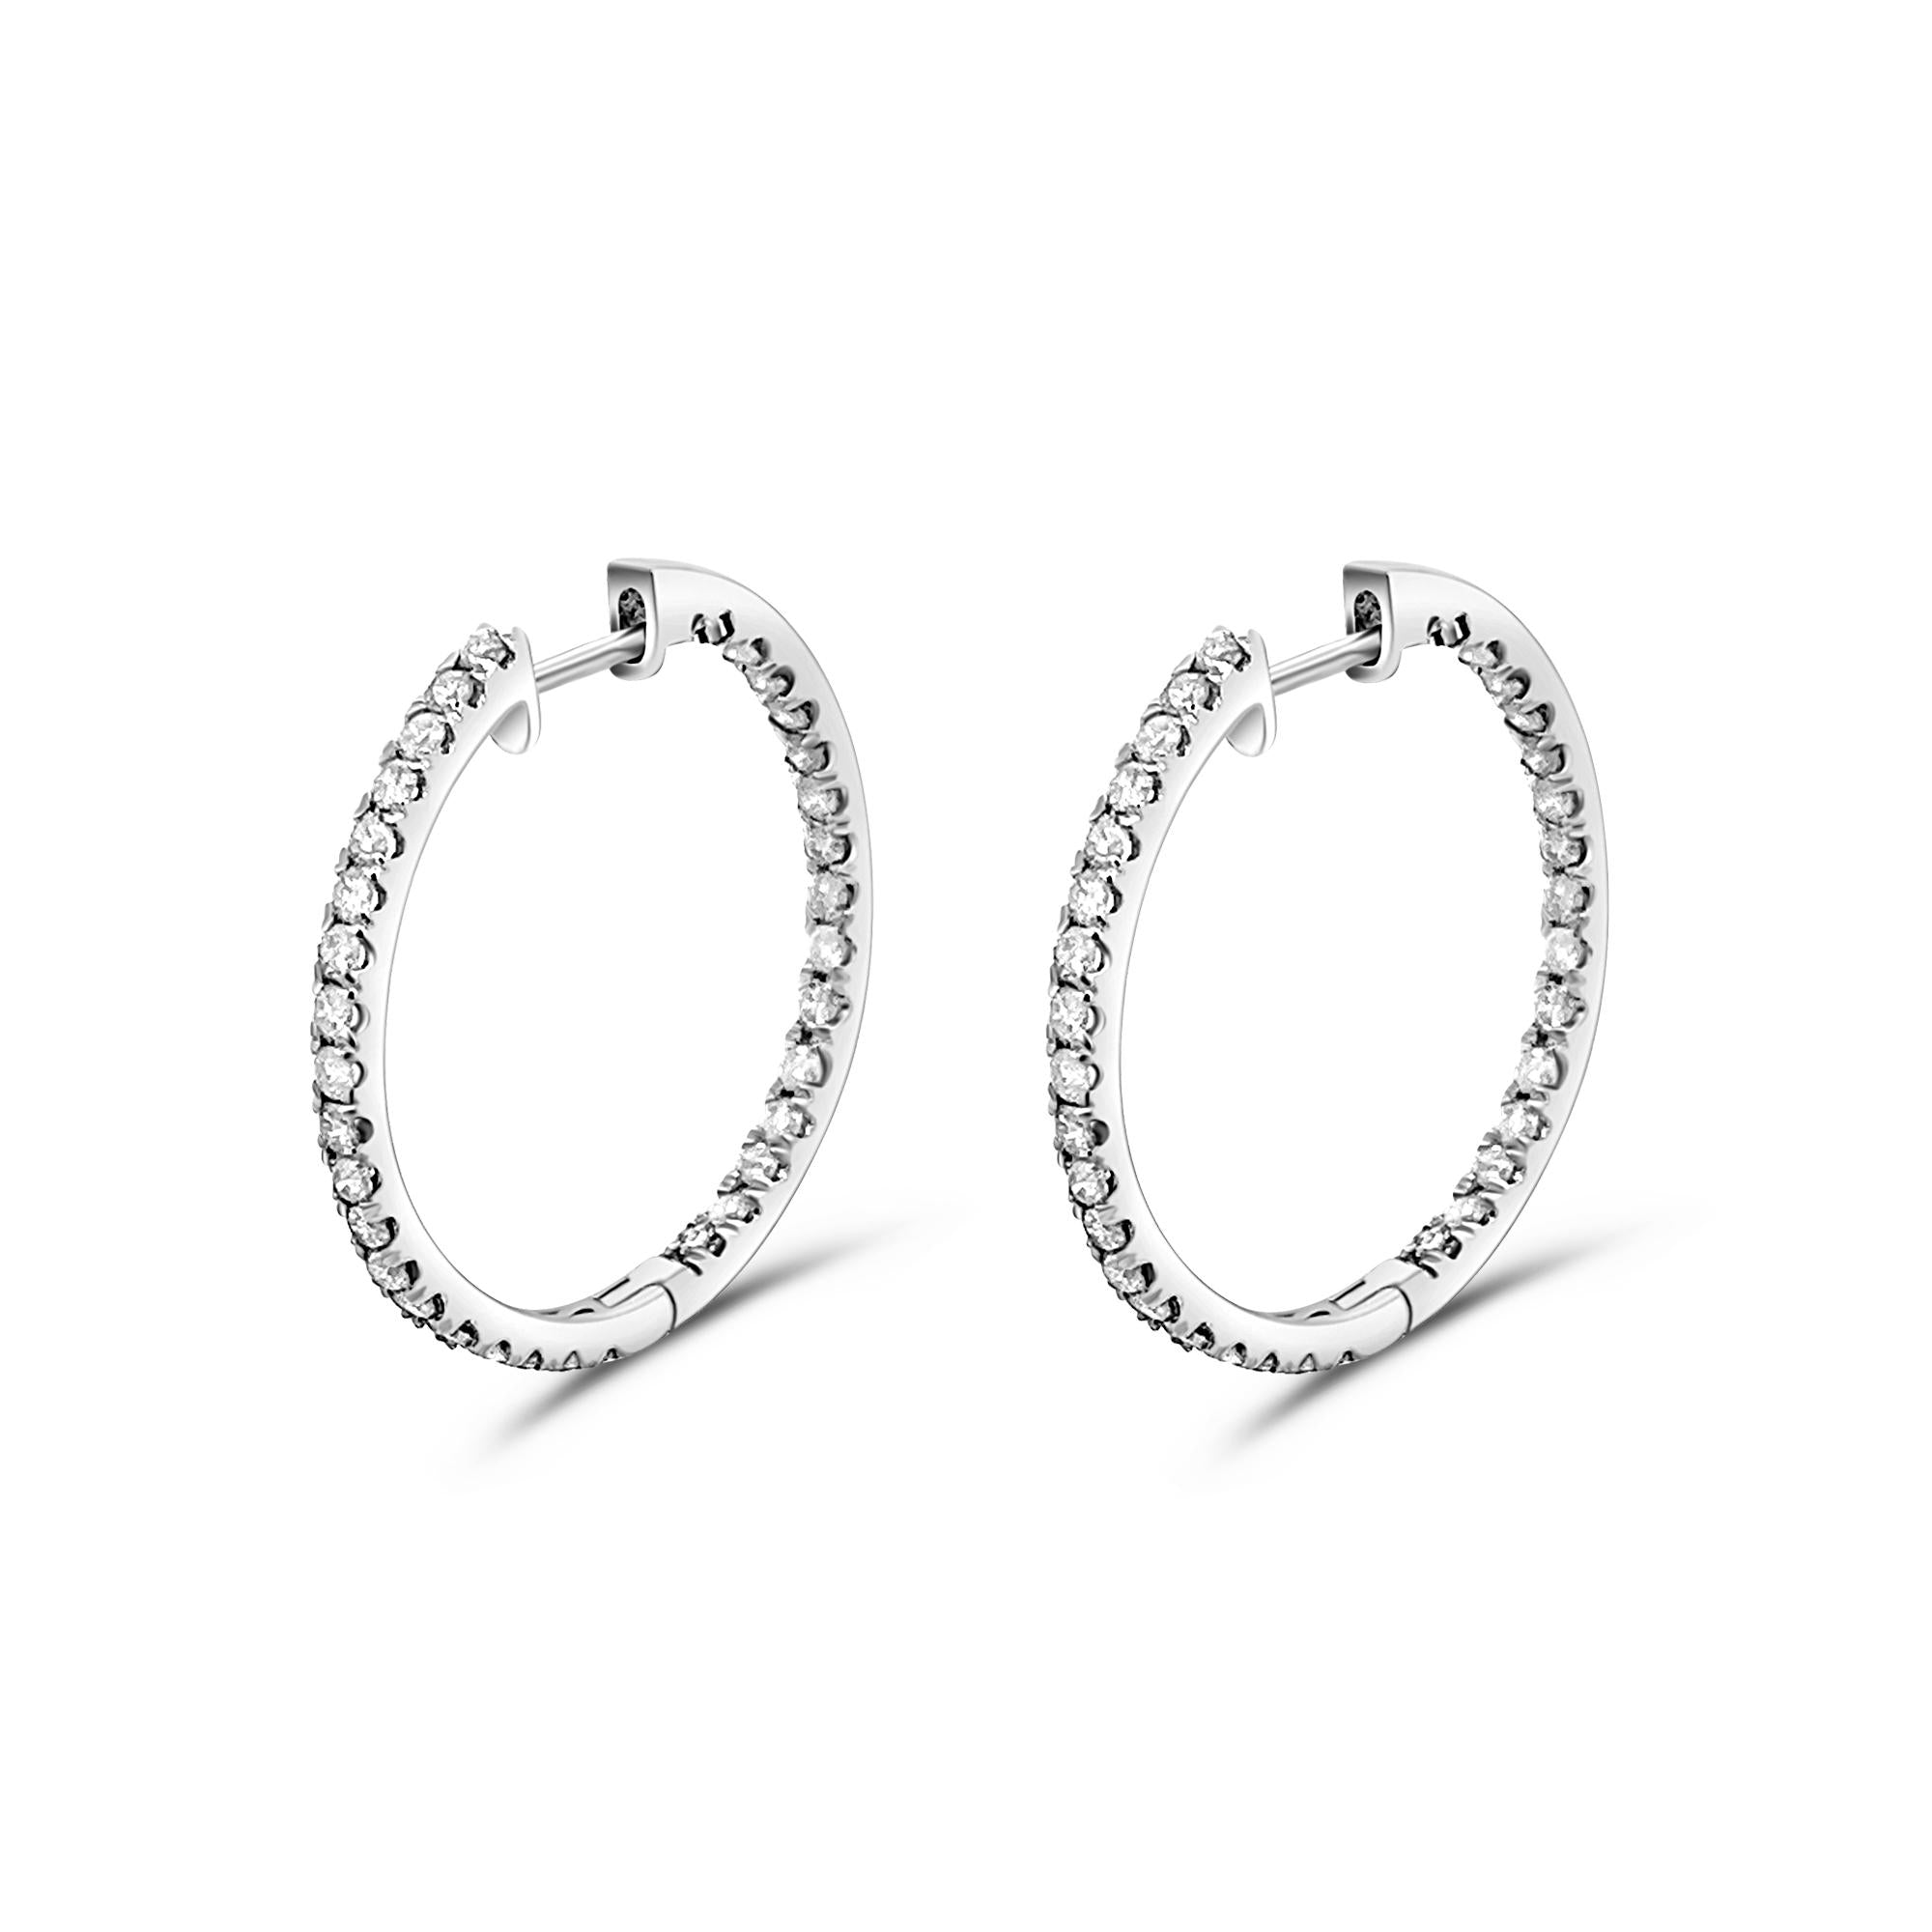 Natual 1.2 Carat Diamond Inside-Out Hoop Earrings in 14K Gold